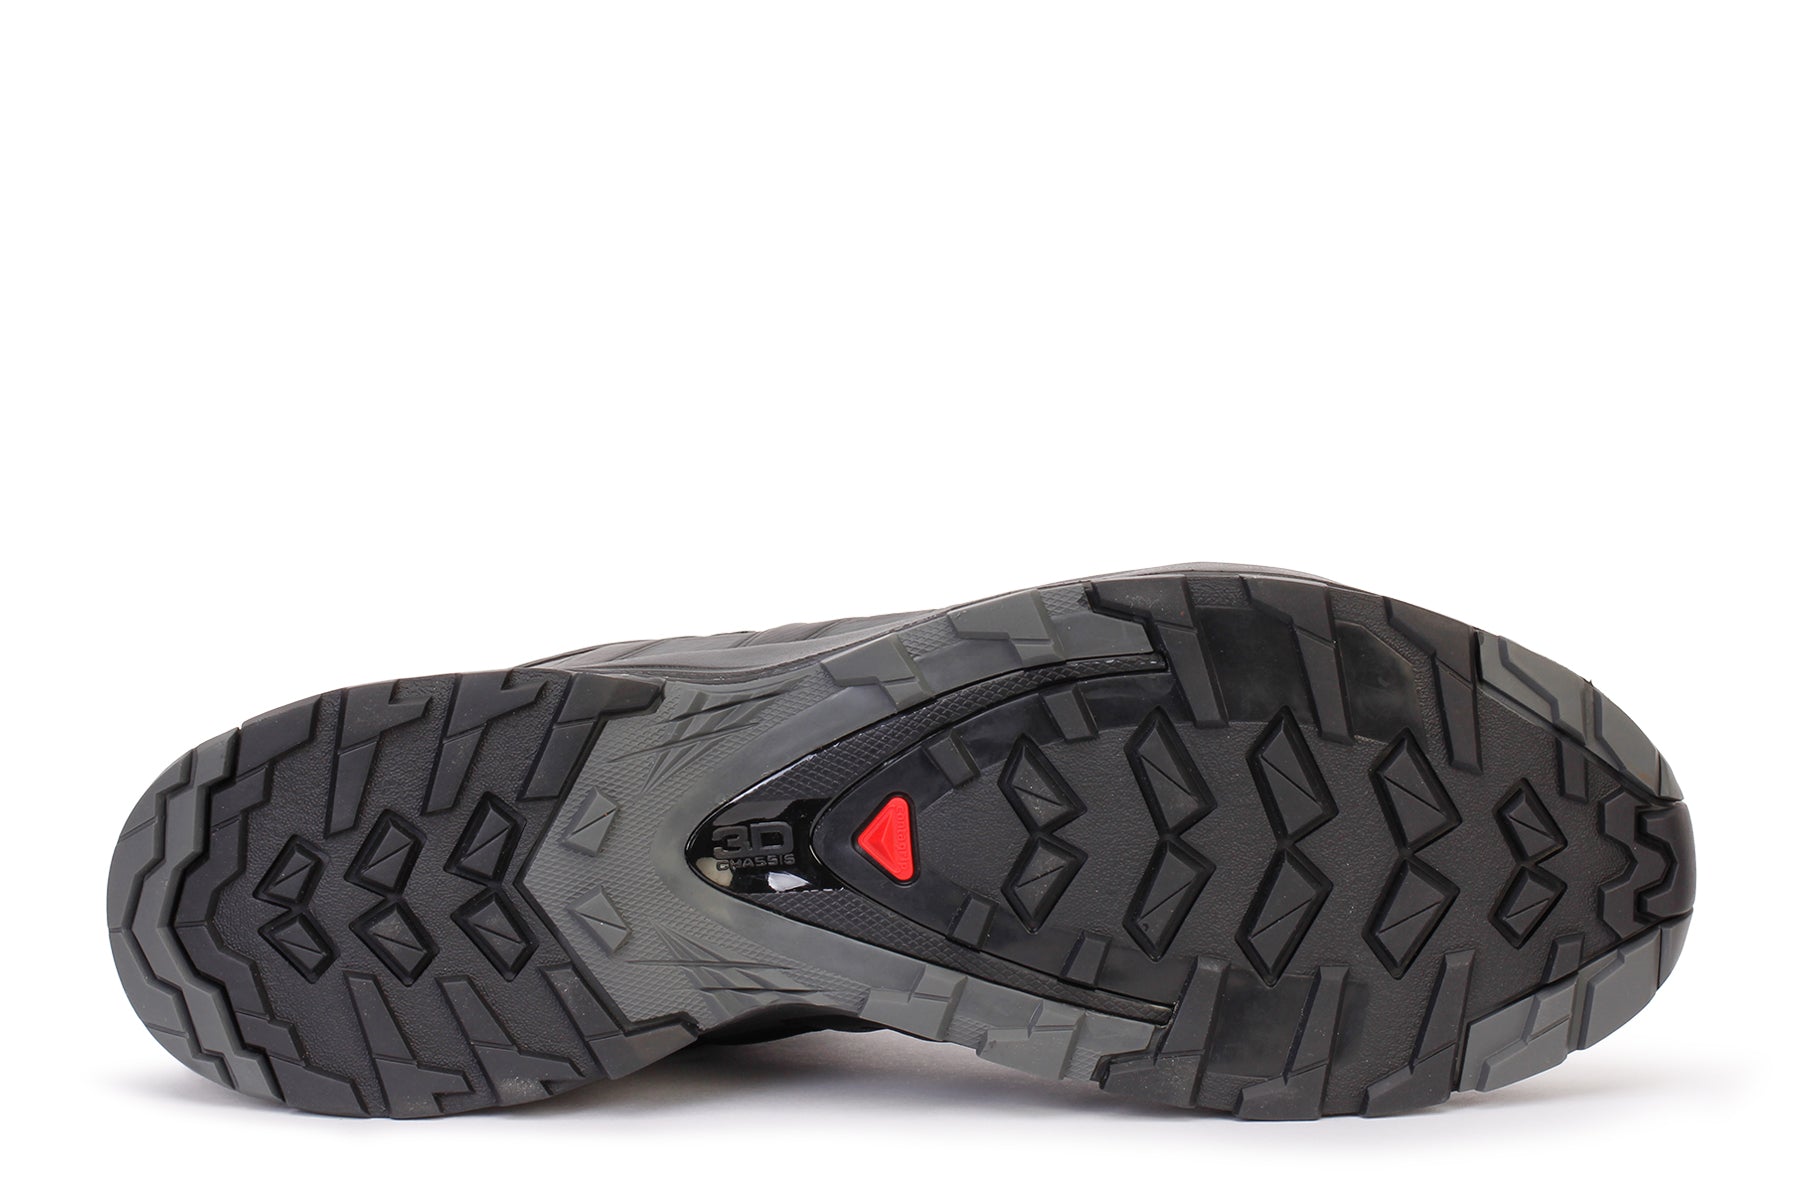 Salomon Men's Xa Pro 3D V8 Trail Running Shoes